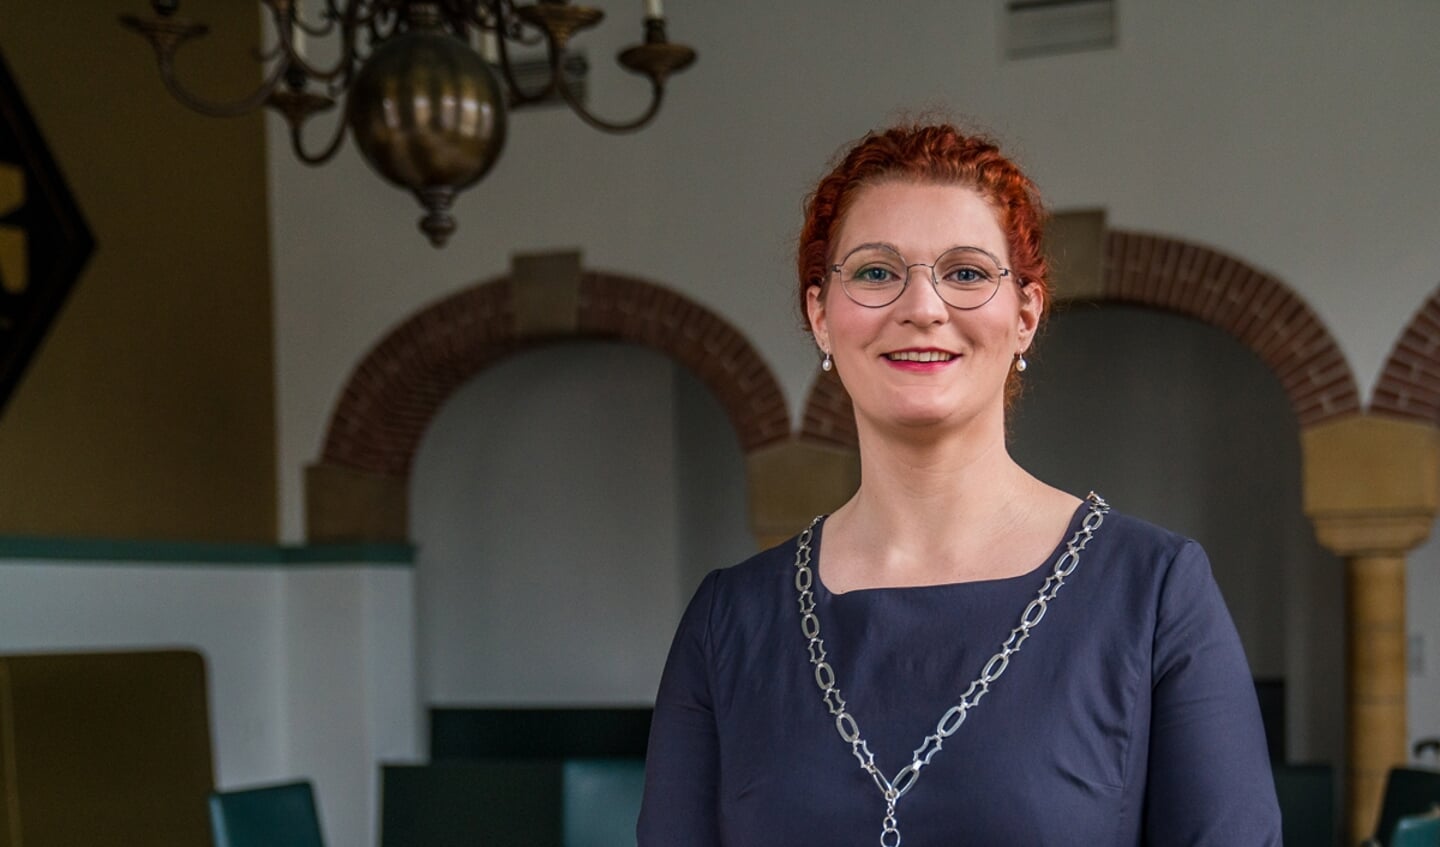 ,,Dankbaar en vereerd’’, was de eerste reactie van Magda Jansen (33) op haar voordracht voor burgemeester van Woudenberg. 